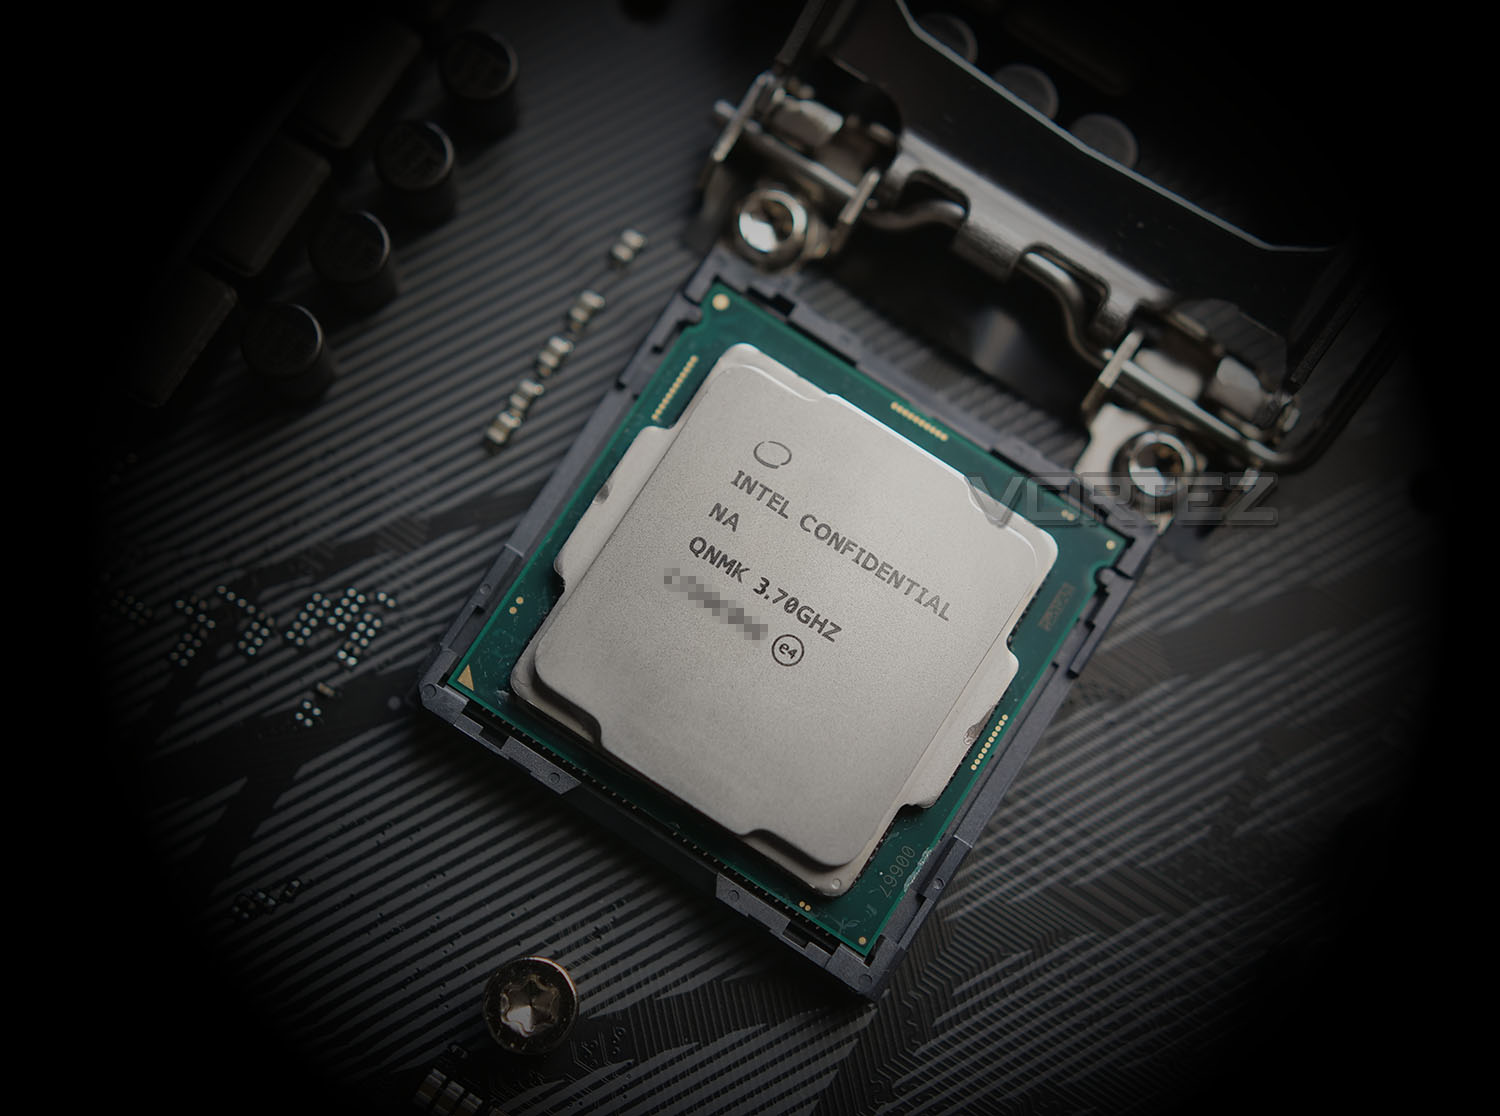 Đây là những gì hiện tại chúng ta biết được về Intel Core i7-9700K